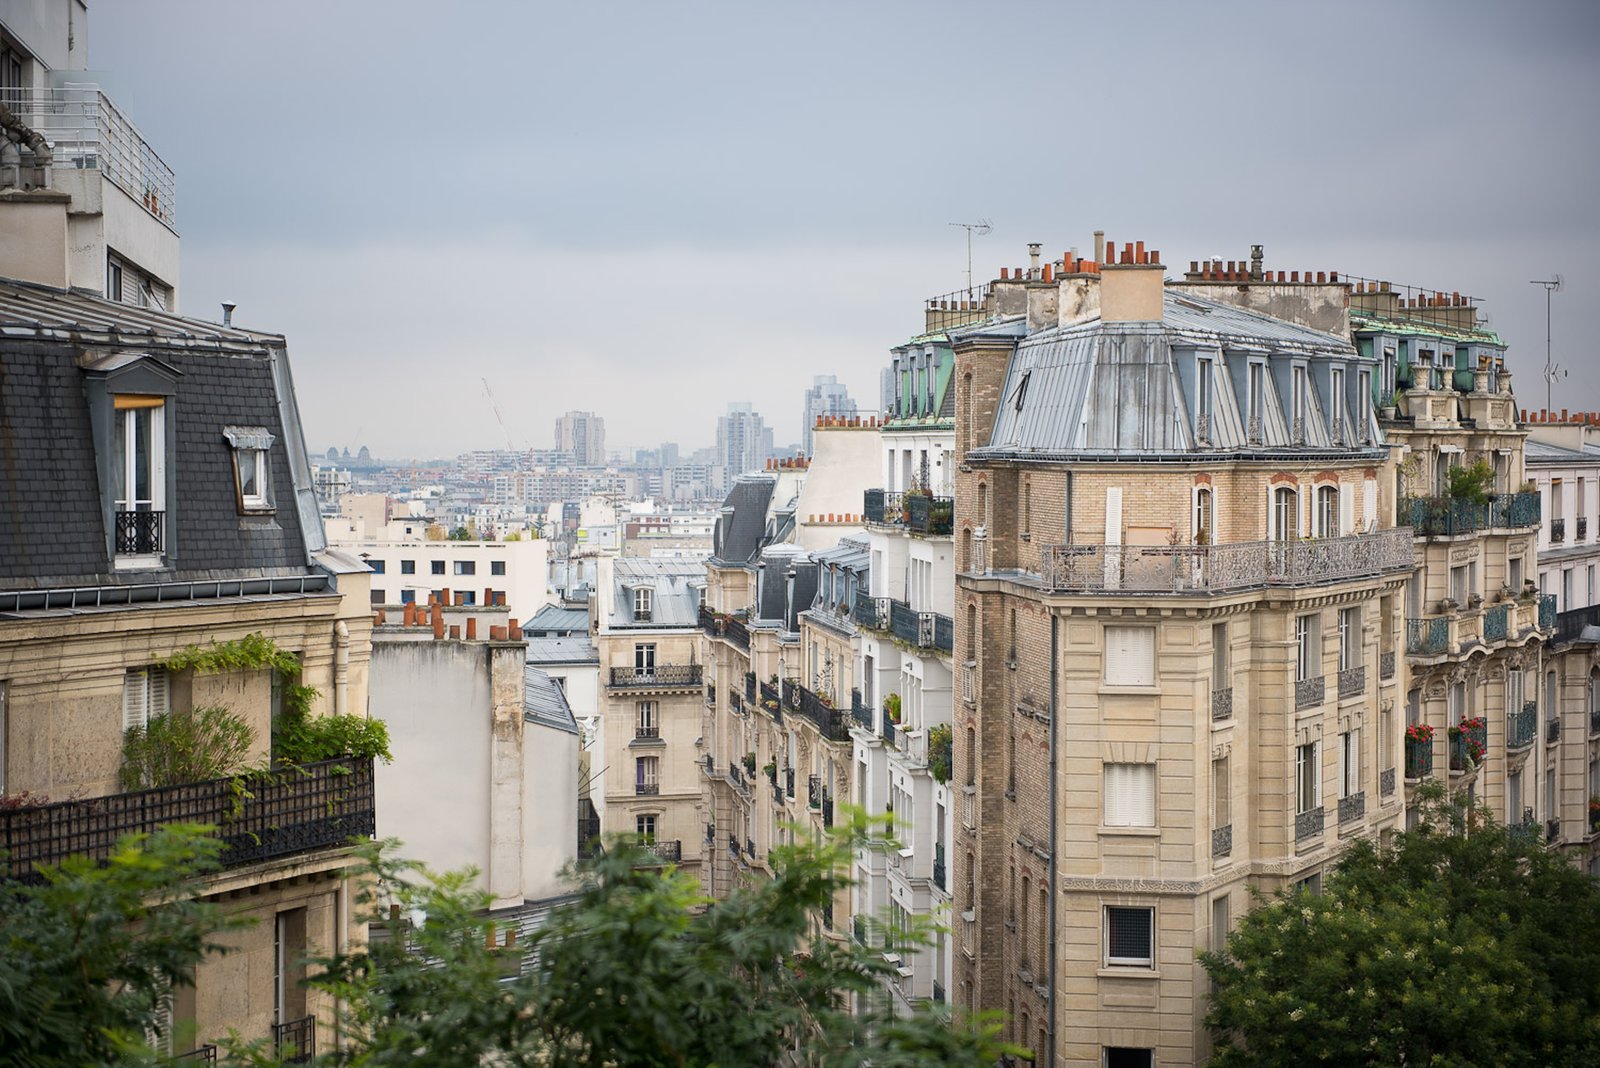 Khung cảnh tuyệt đẹp xung quanh khu phố Montmartre, Paris - nhìn từ trên cao.